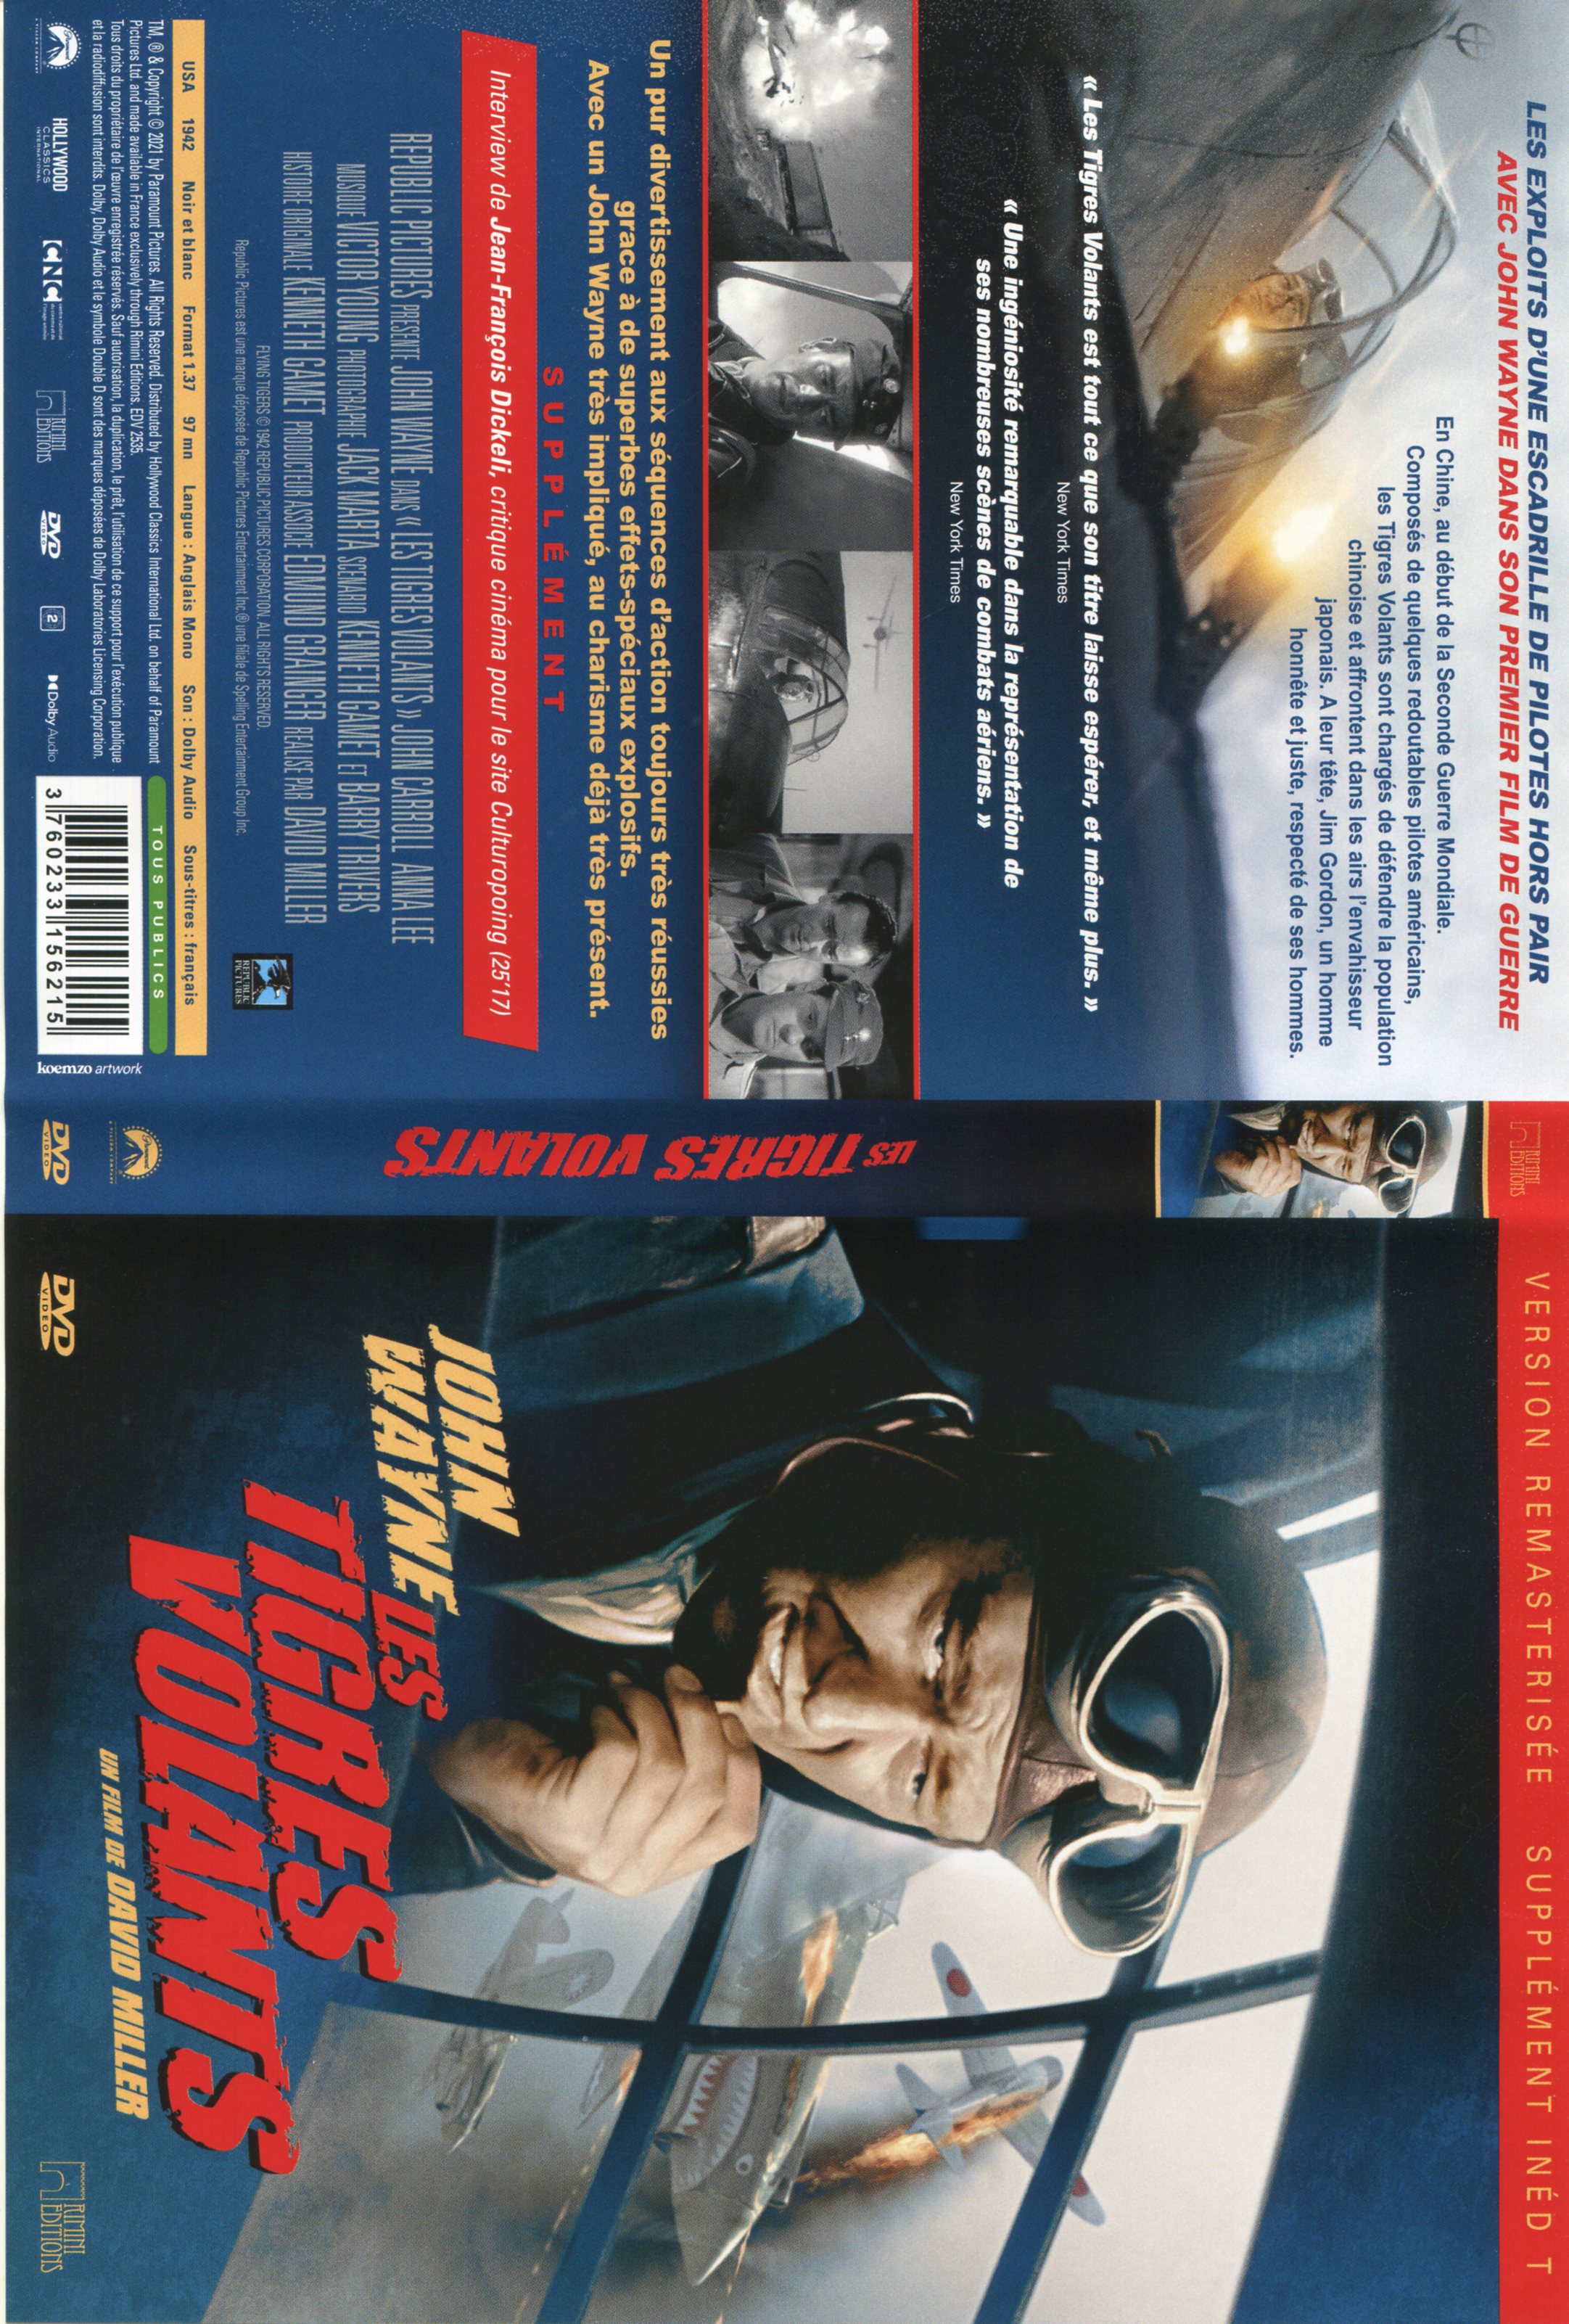 Jaquette DVD Les tigres volants v2